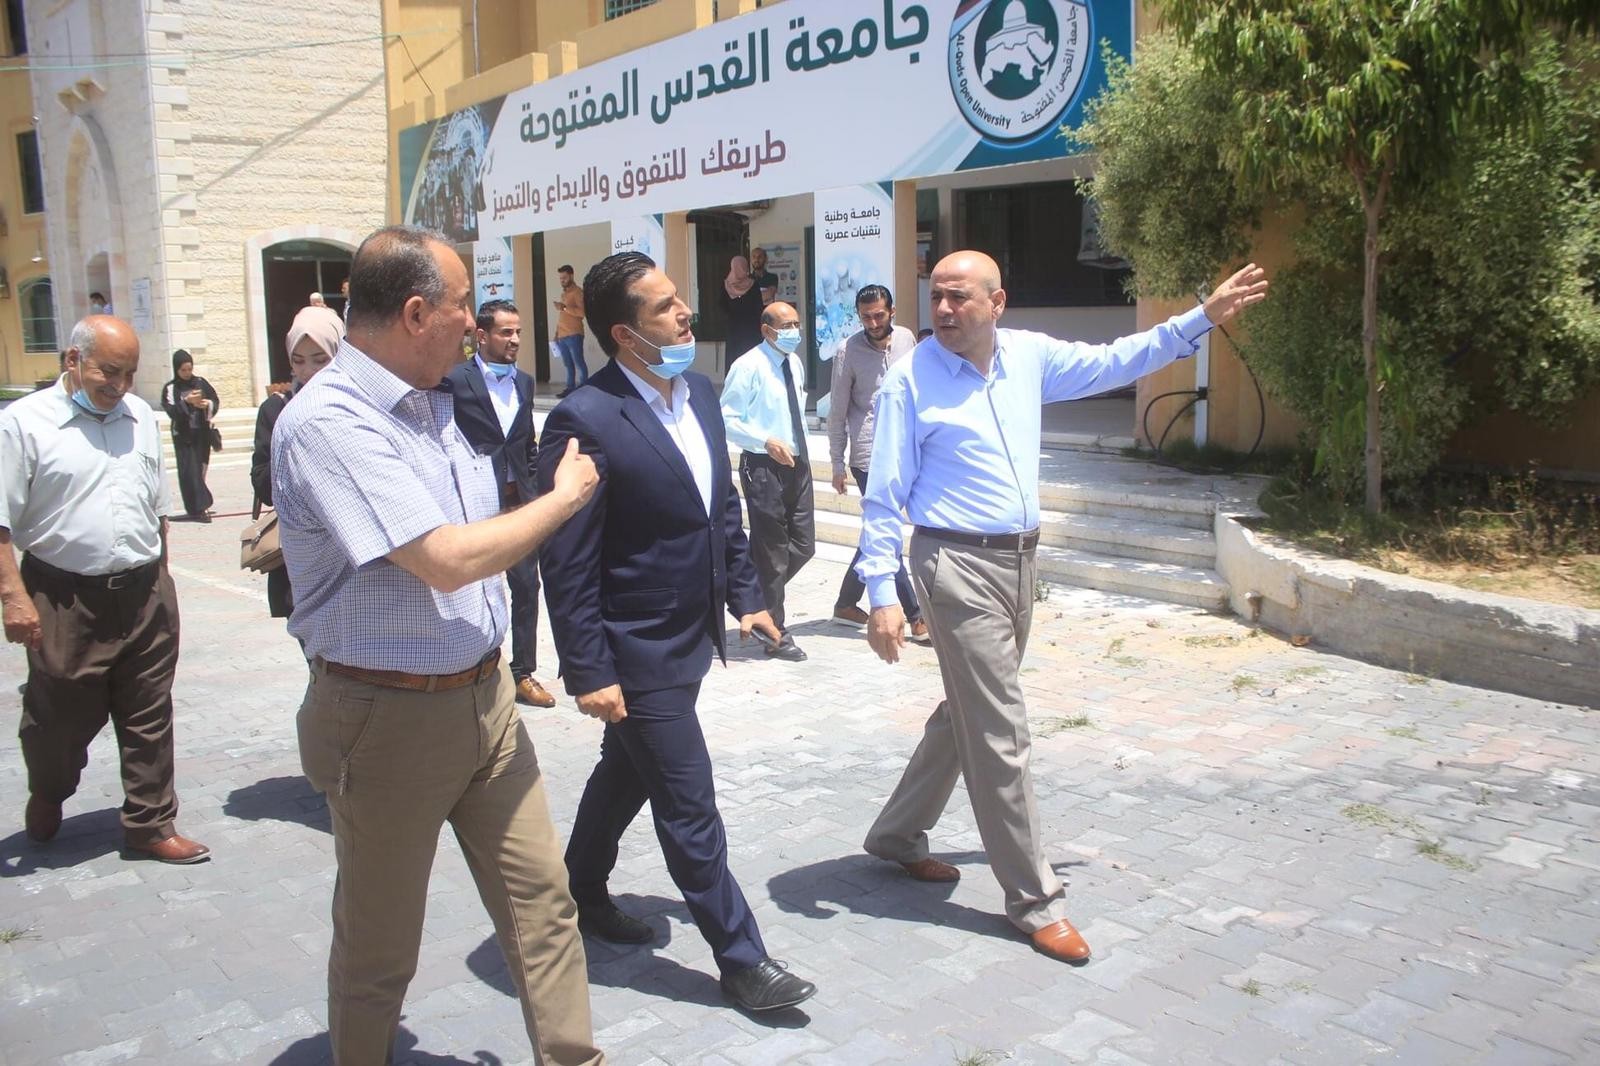 "الكلية العربية" تنظم سلسلة زيارات تضامنية لمؤسسات المجتمع المحلي والمدني